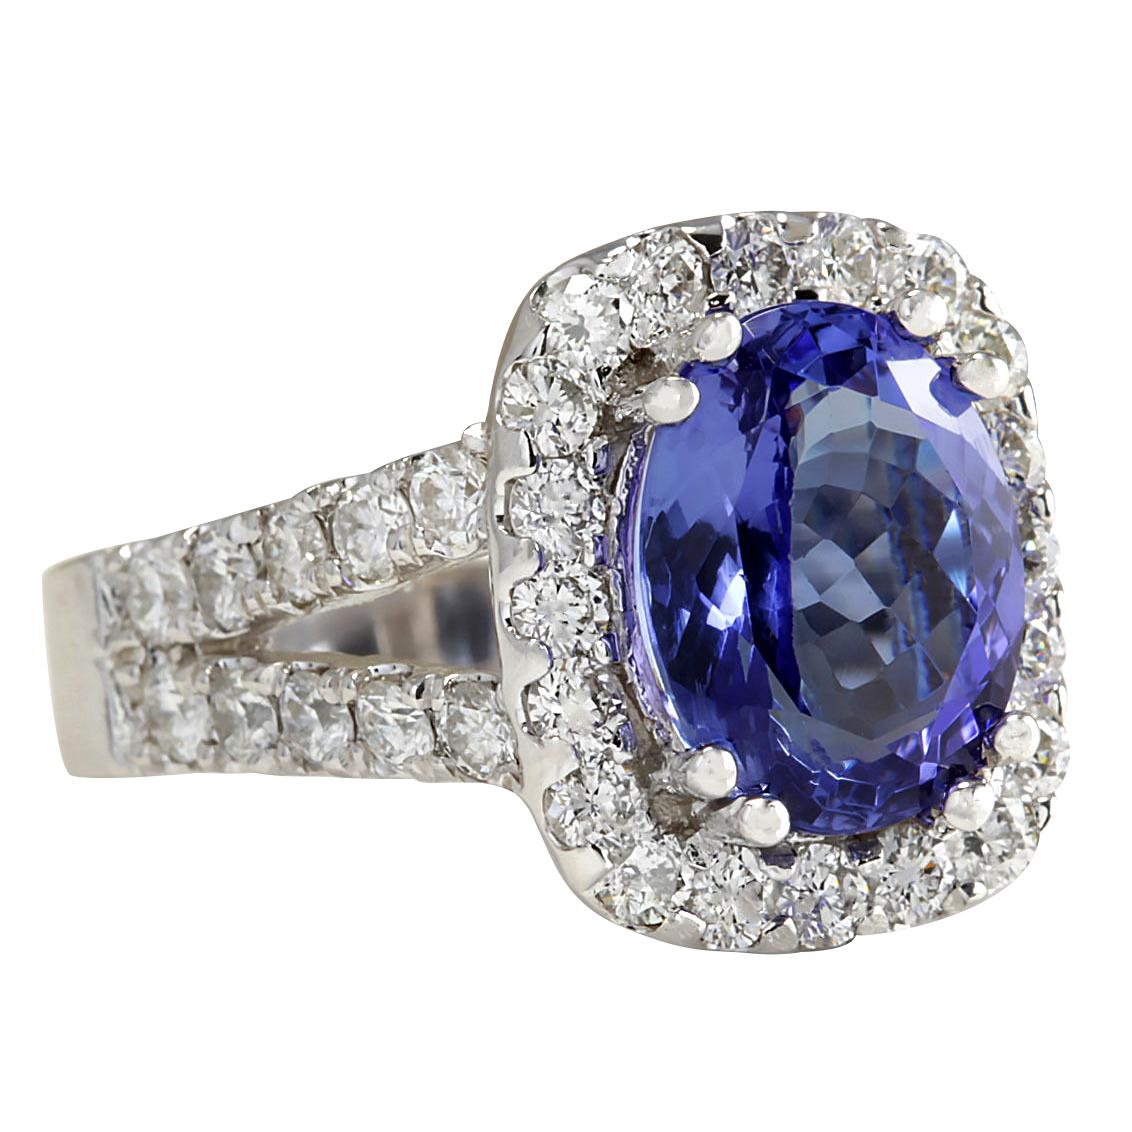 5.62 Carat Tanzanite 14 Karat White Gold Diamond Ring
Stamped: 14K White Gold
Total Ring Weight: 9.0 Grams
Total  Tanzanite Weight is 4.02 Carat (Measures: 11.00x9.00 mm)
Color: Blue
Total  Diamond Weight is 1.60 Carat
Color: F-G, Clarity: